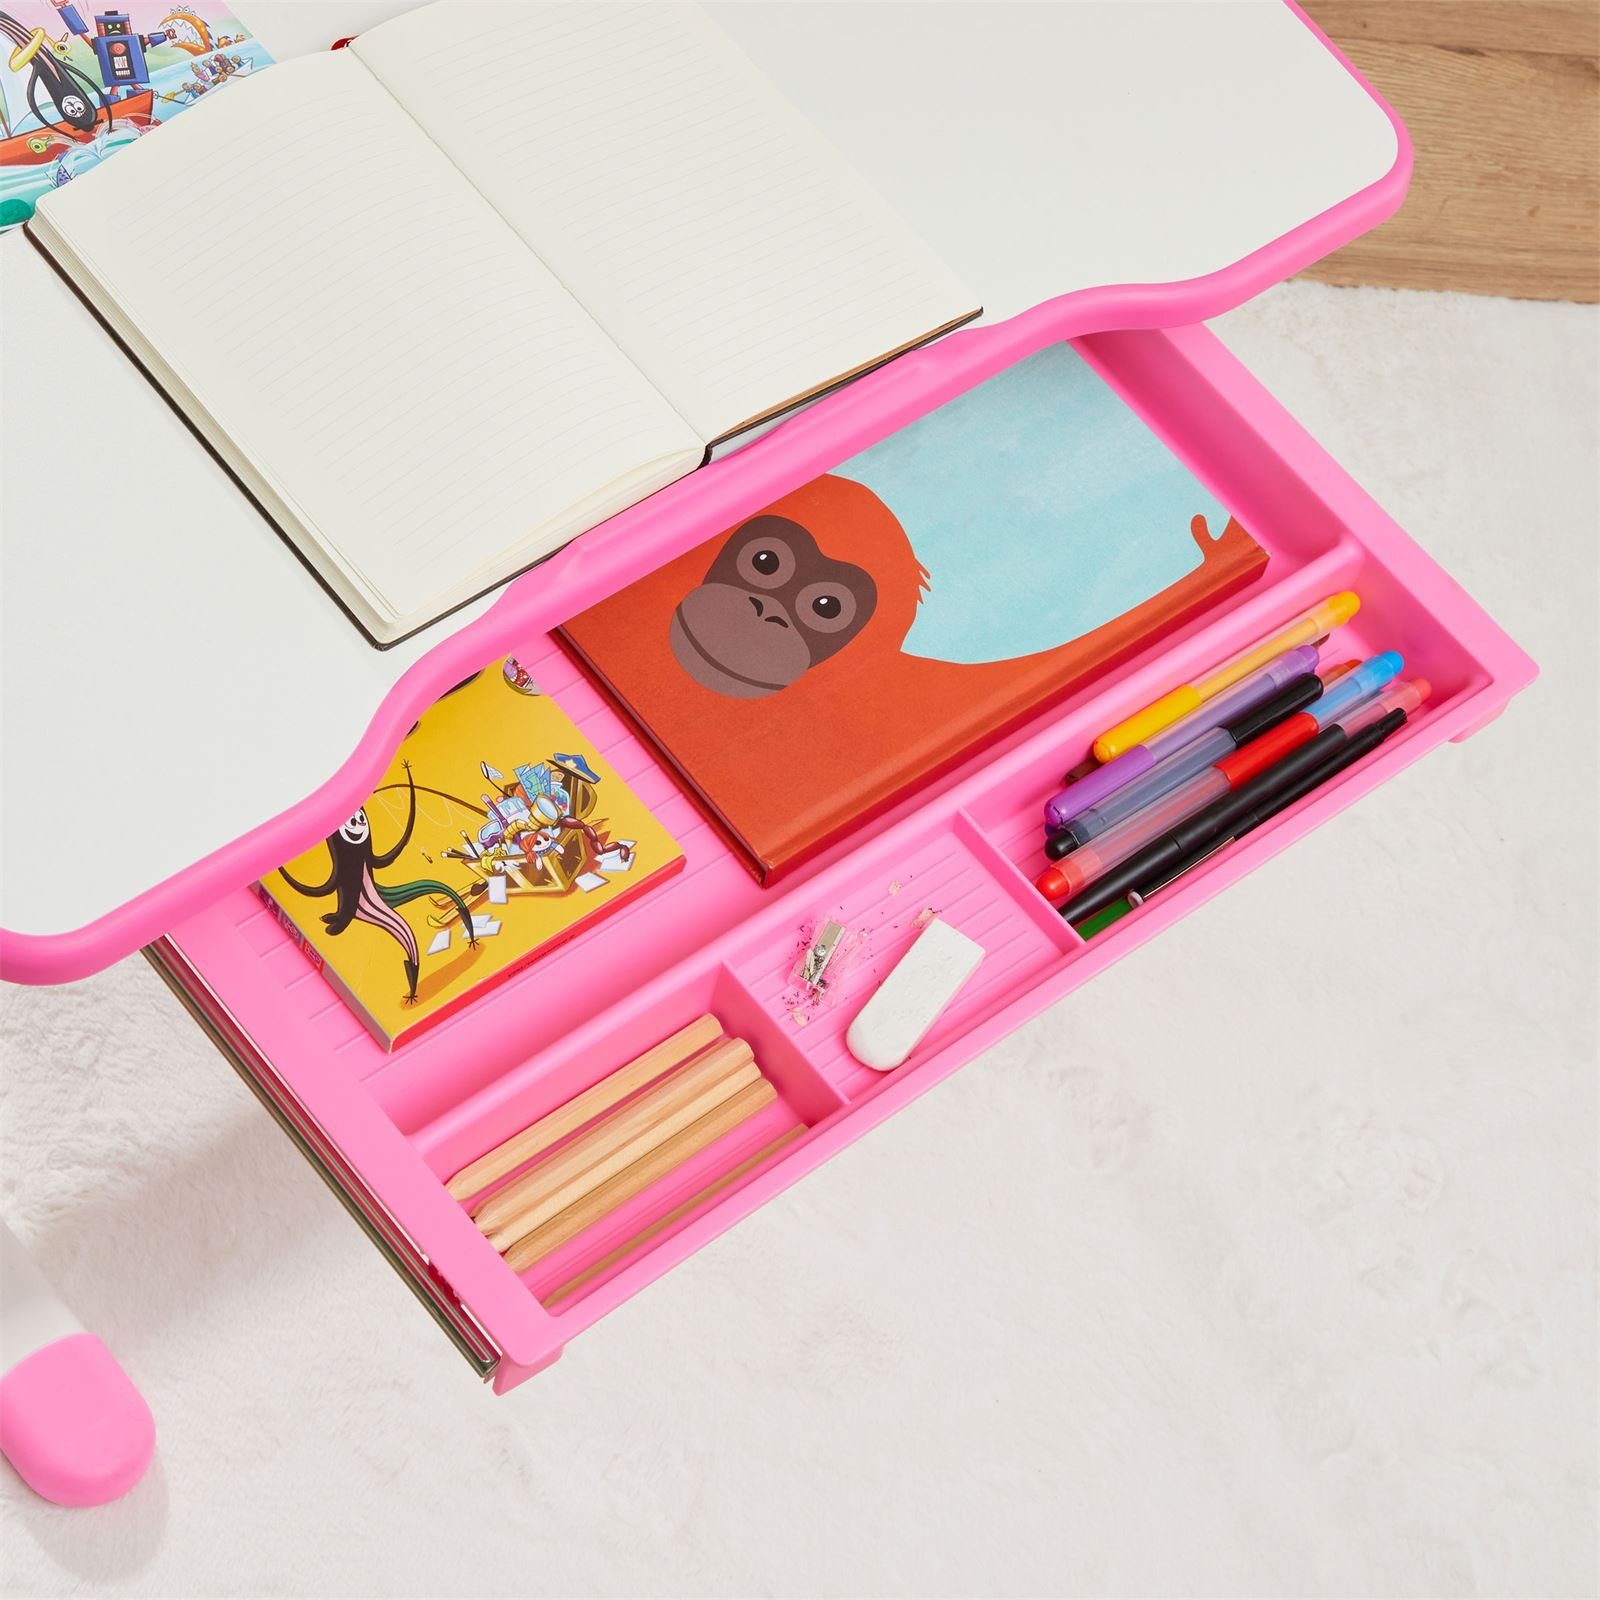 CARO-Möbel Kinderschreibtisch Kin weiß/rosa neigbar höhenverstellbar VITA, Kinderschreibtisch Schreibtisch